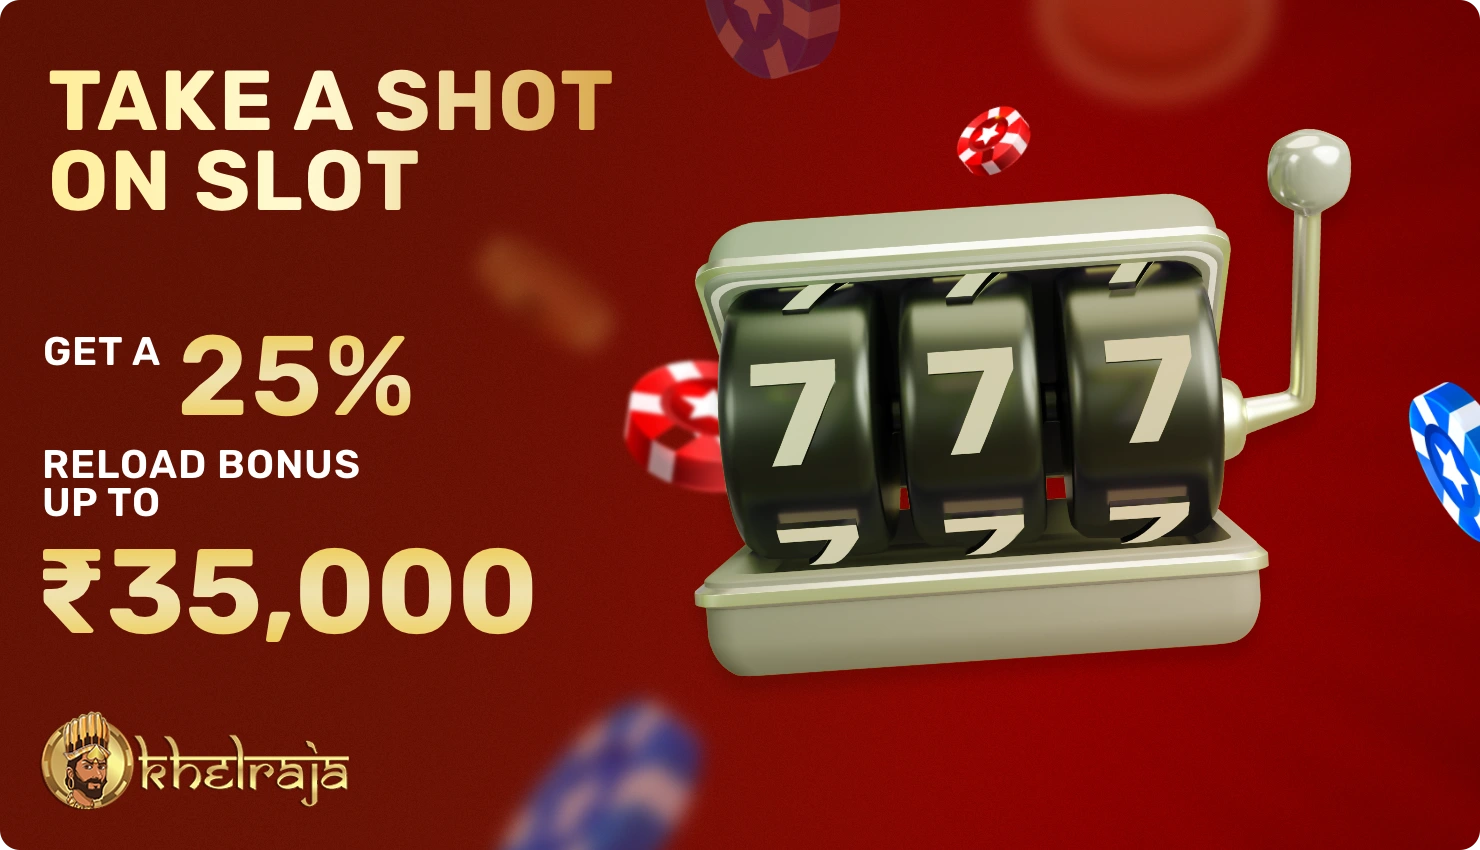 Take a shot on slot bonus at Khelraja